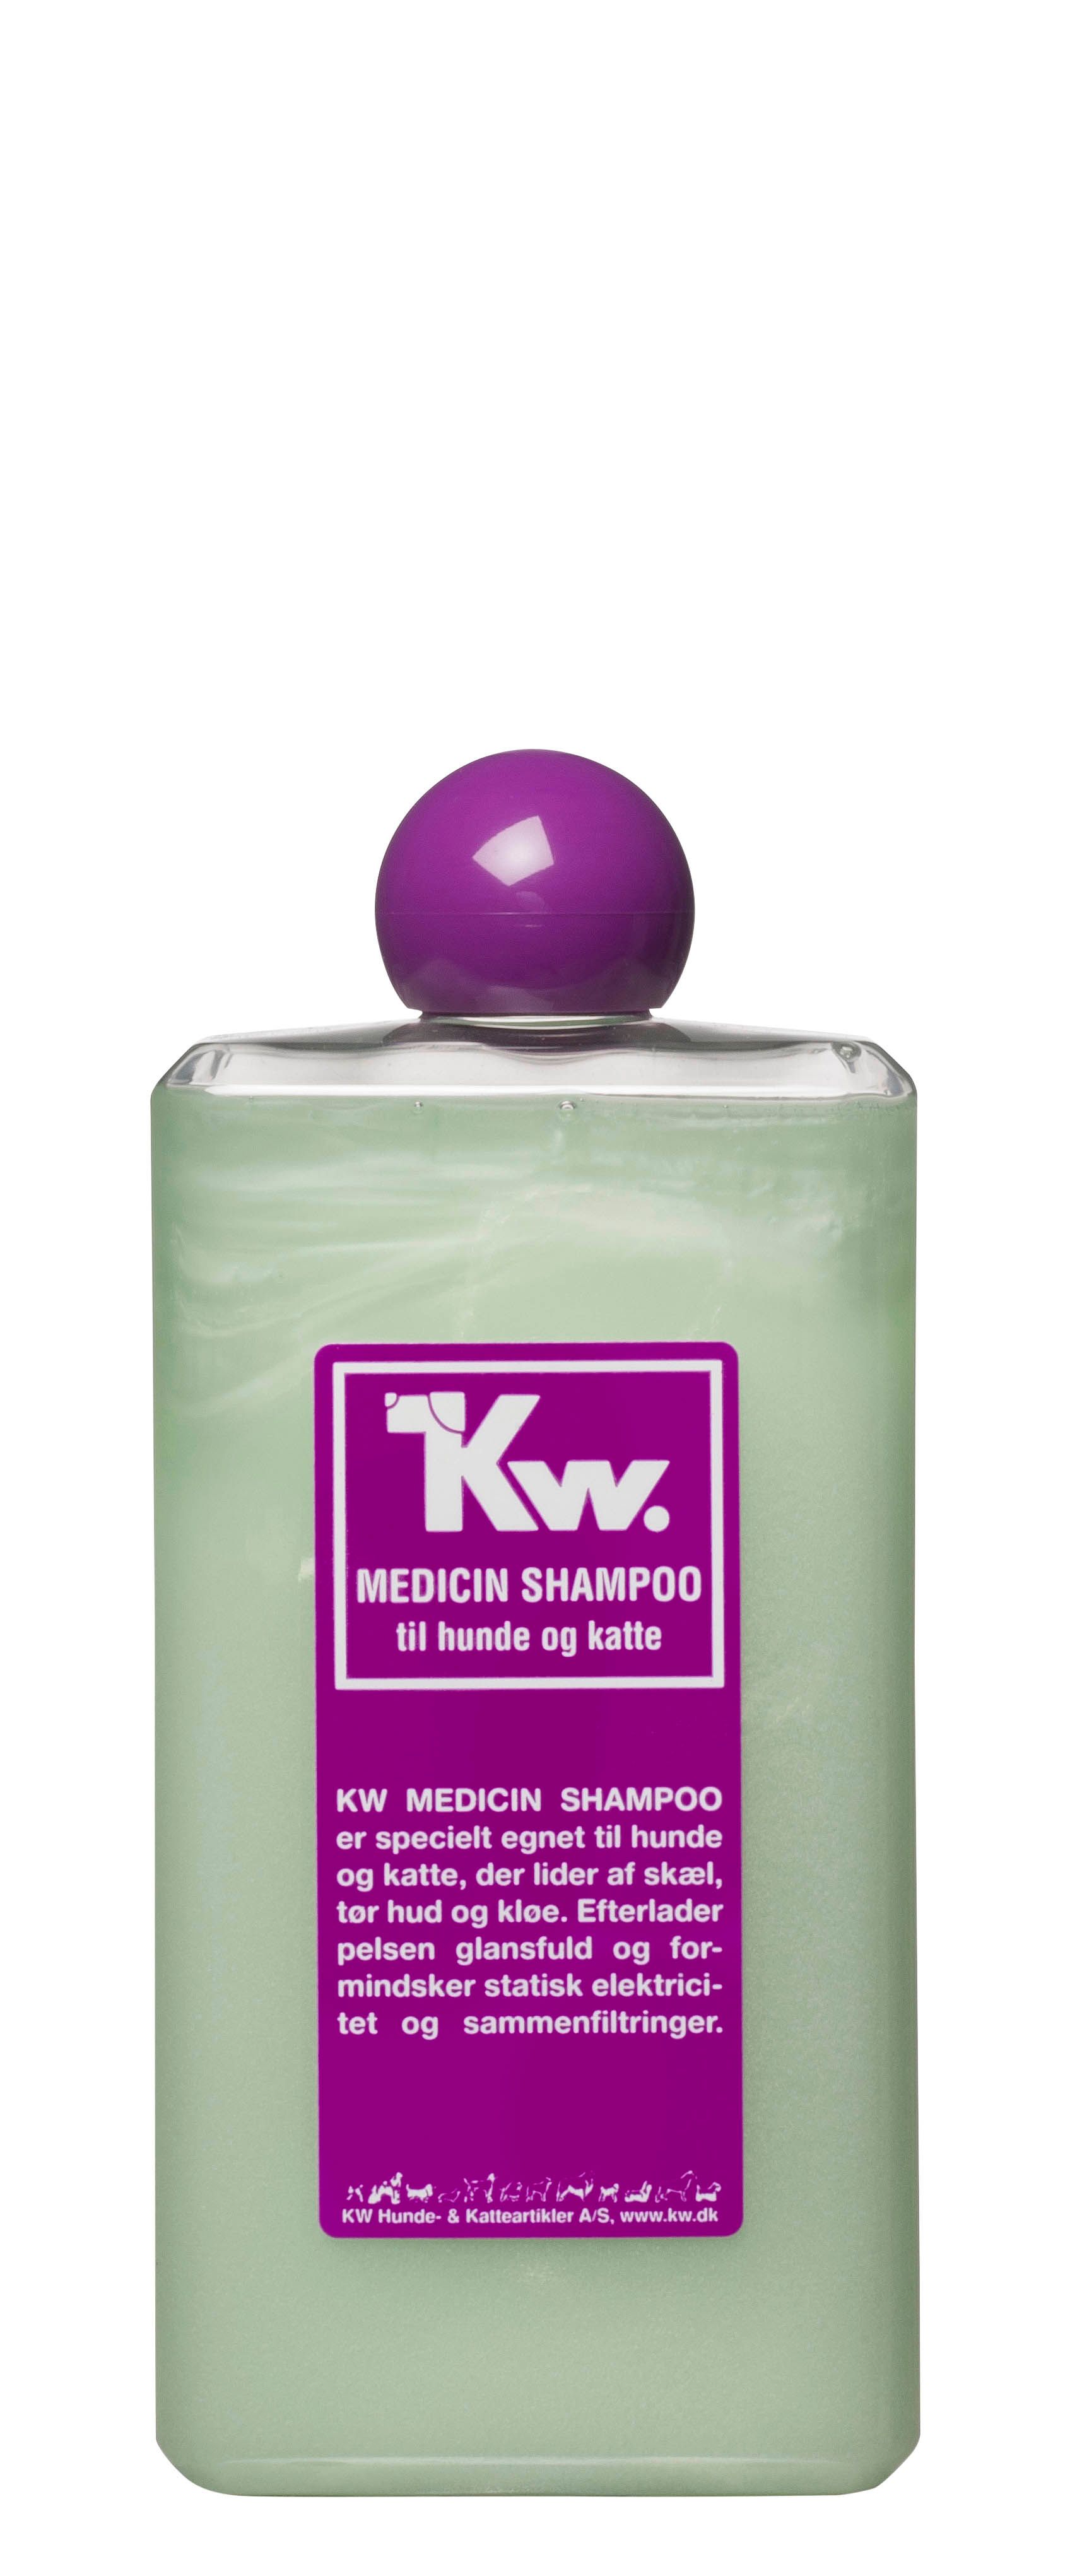 KW Medicin Shampoo specielt egnet til hunde og katte, der lider af skæl, hud og kløe.